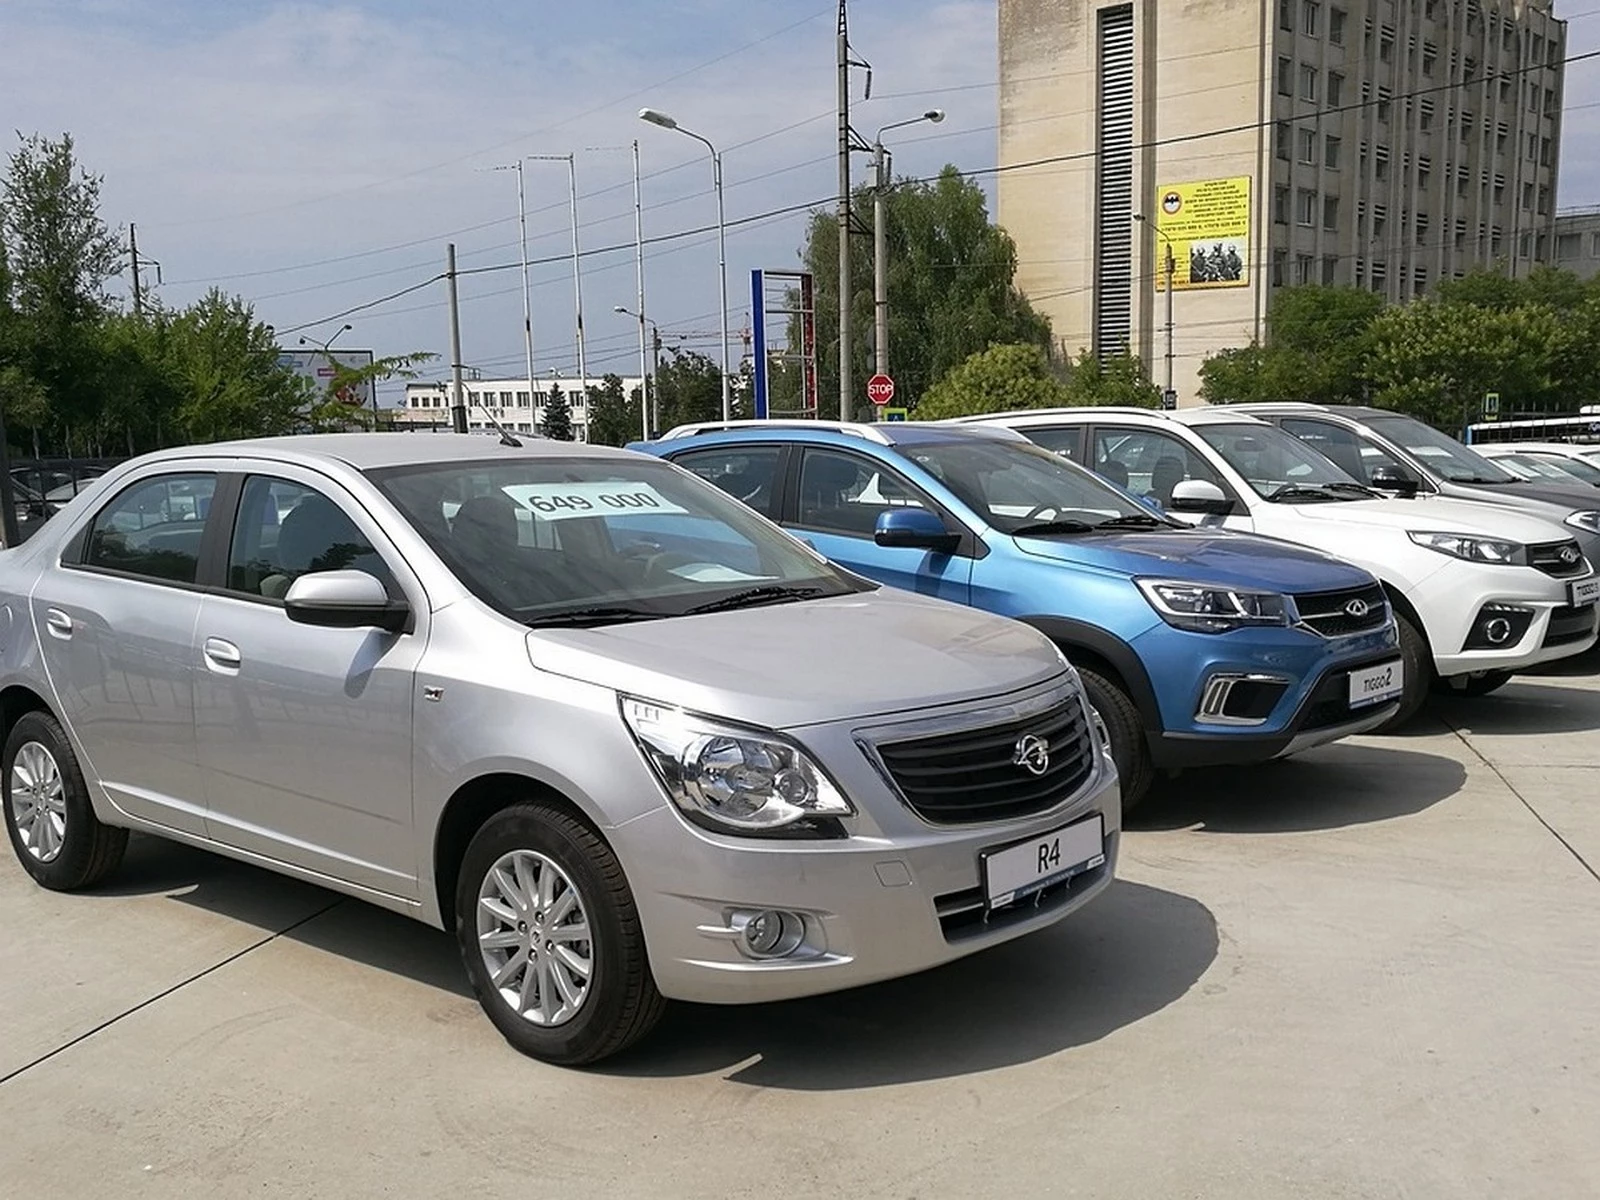 Авто из китая в москве. Китайские авто с пробегом. Авто с пробегом китаец. Китайские авто выкупленные. Китайские автомобили в Москве.